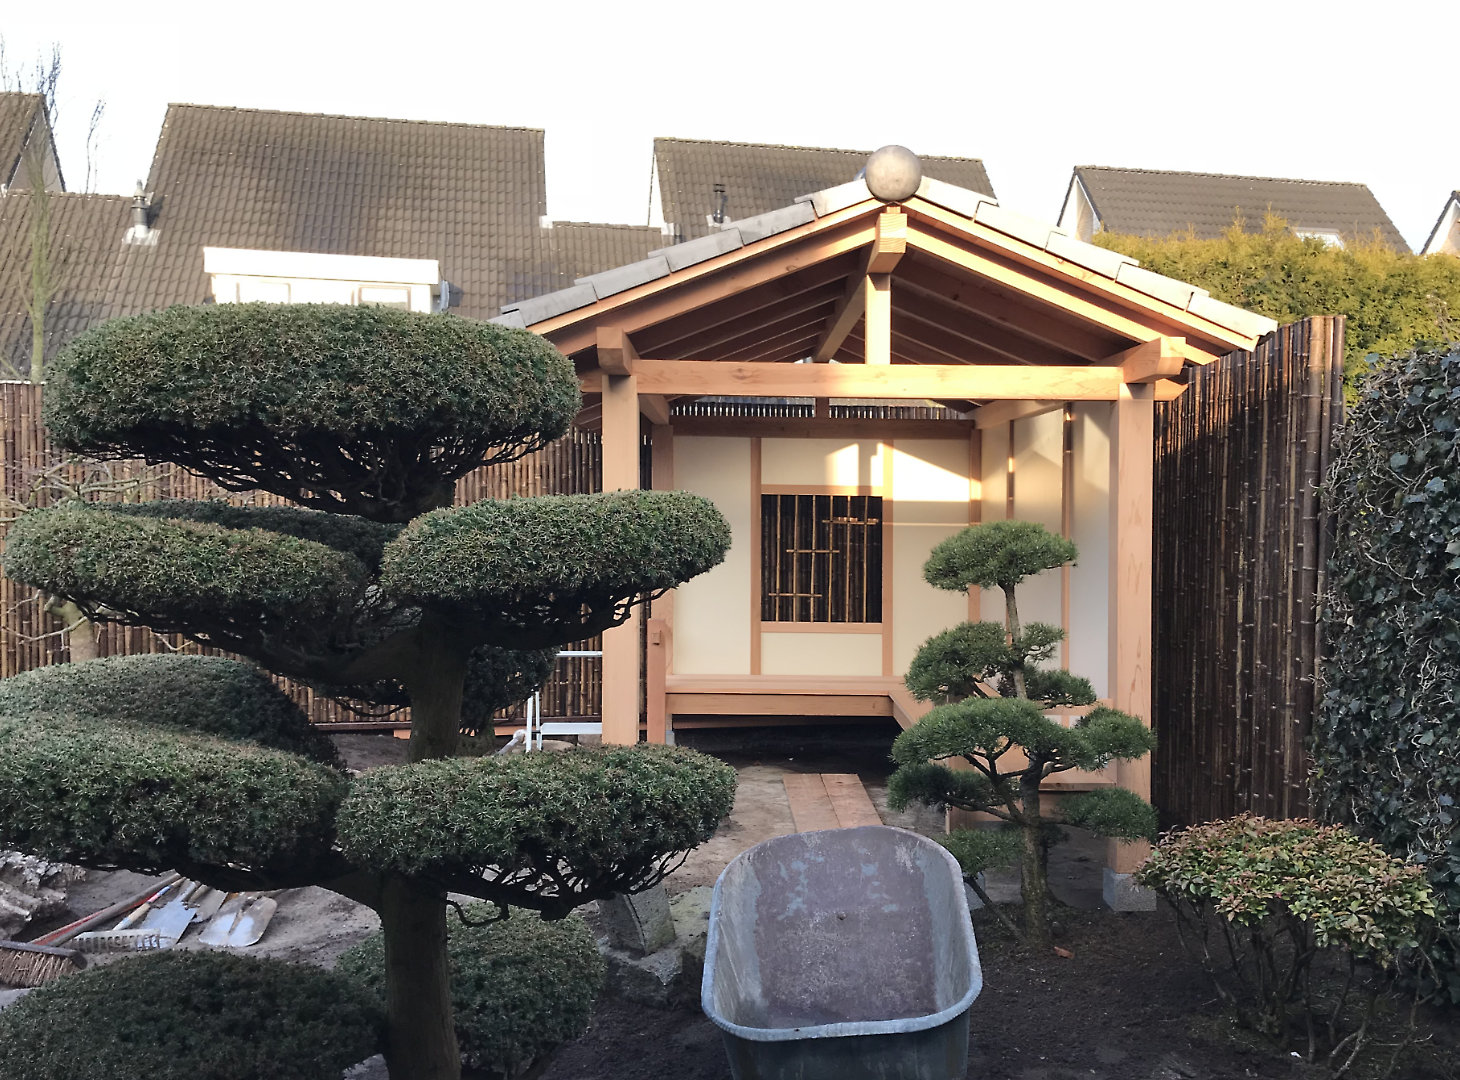 Japanese Garden Almelo Work